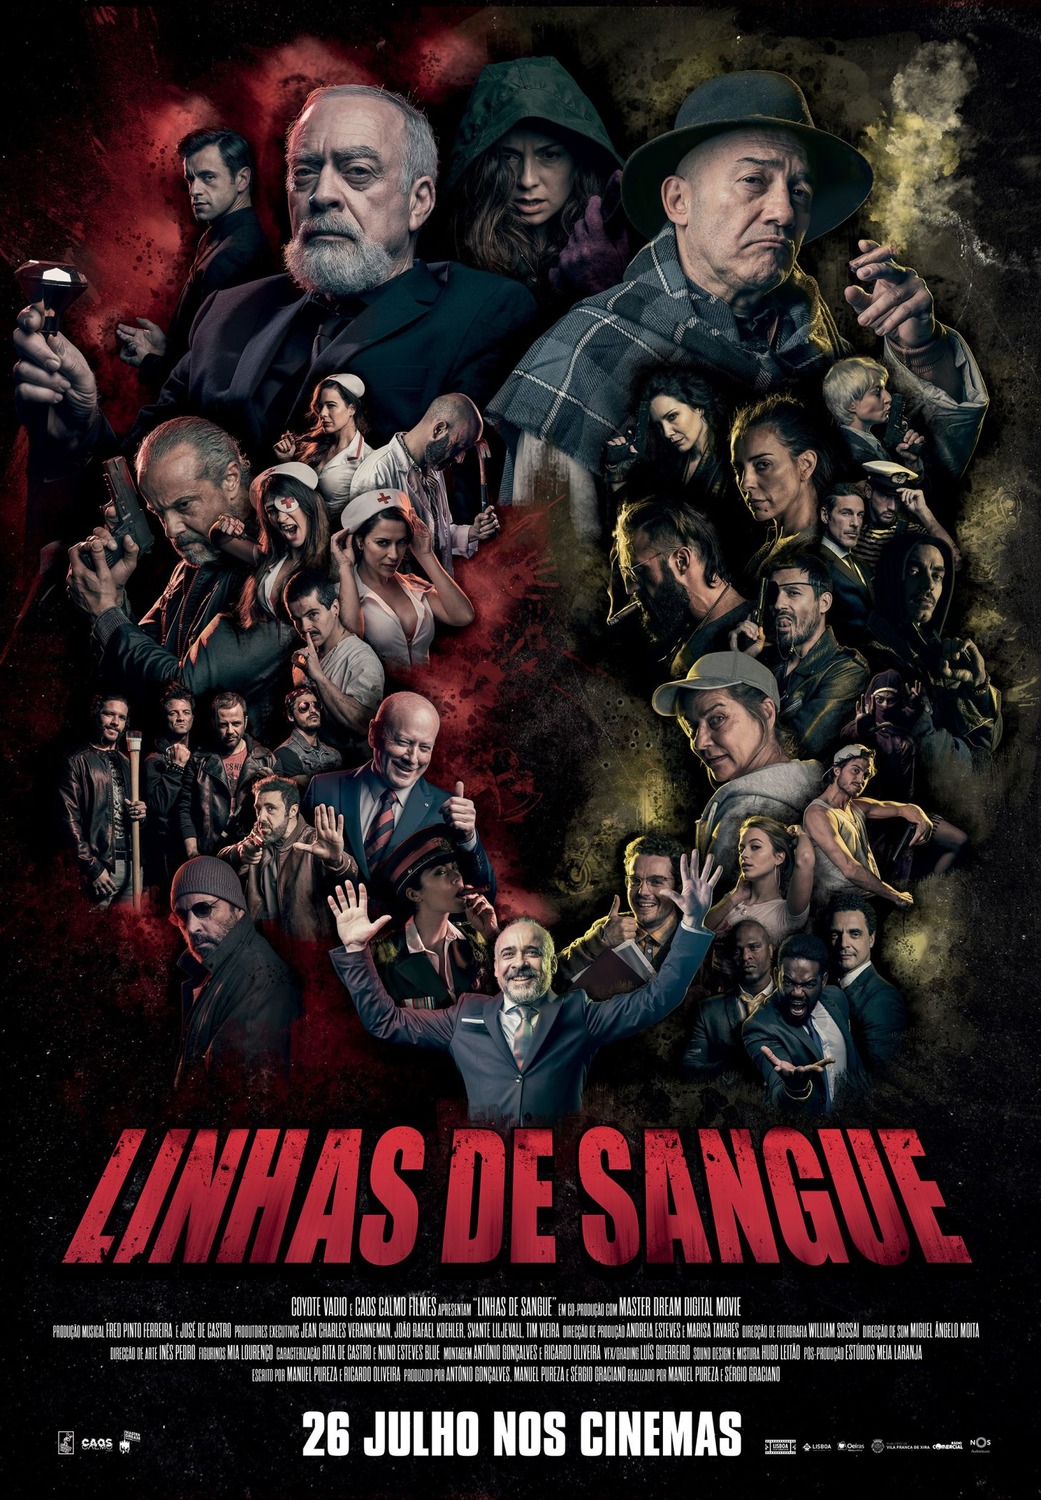 Extra Large Movie Poster Image for Linhas de Sangue 